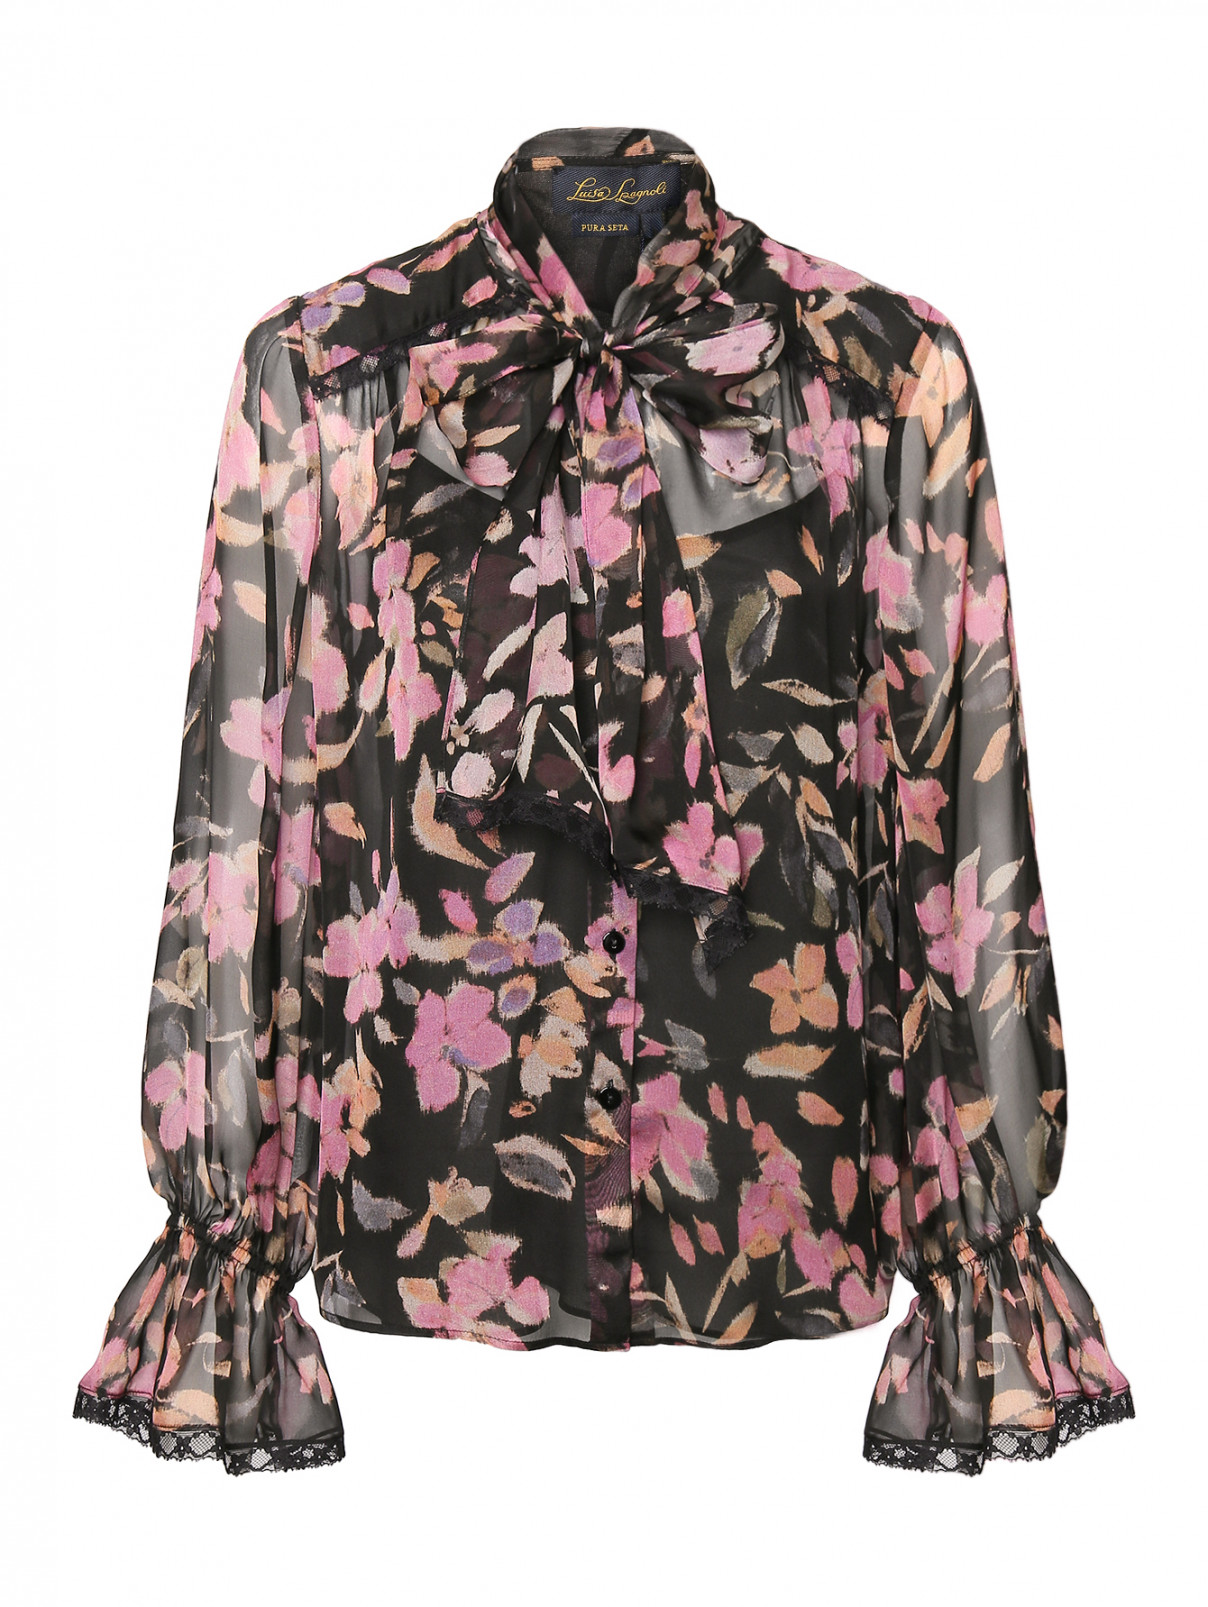 Блуза из шелка с бантом и кружевом Luisa Spagnoli  –  Общий вид  – Цвет:  Черный